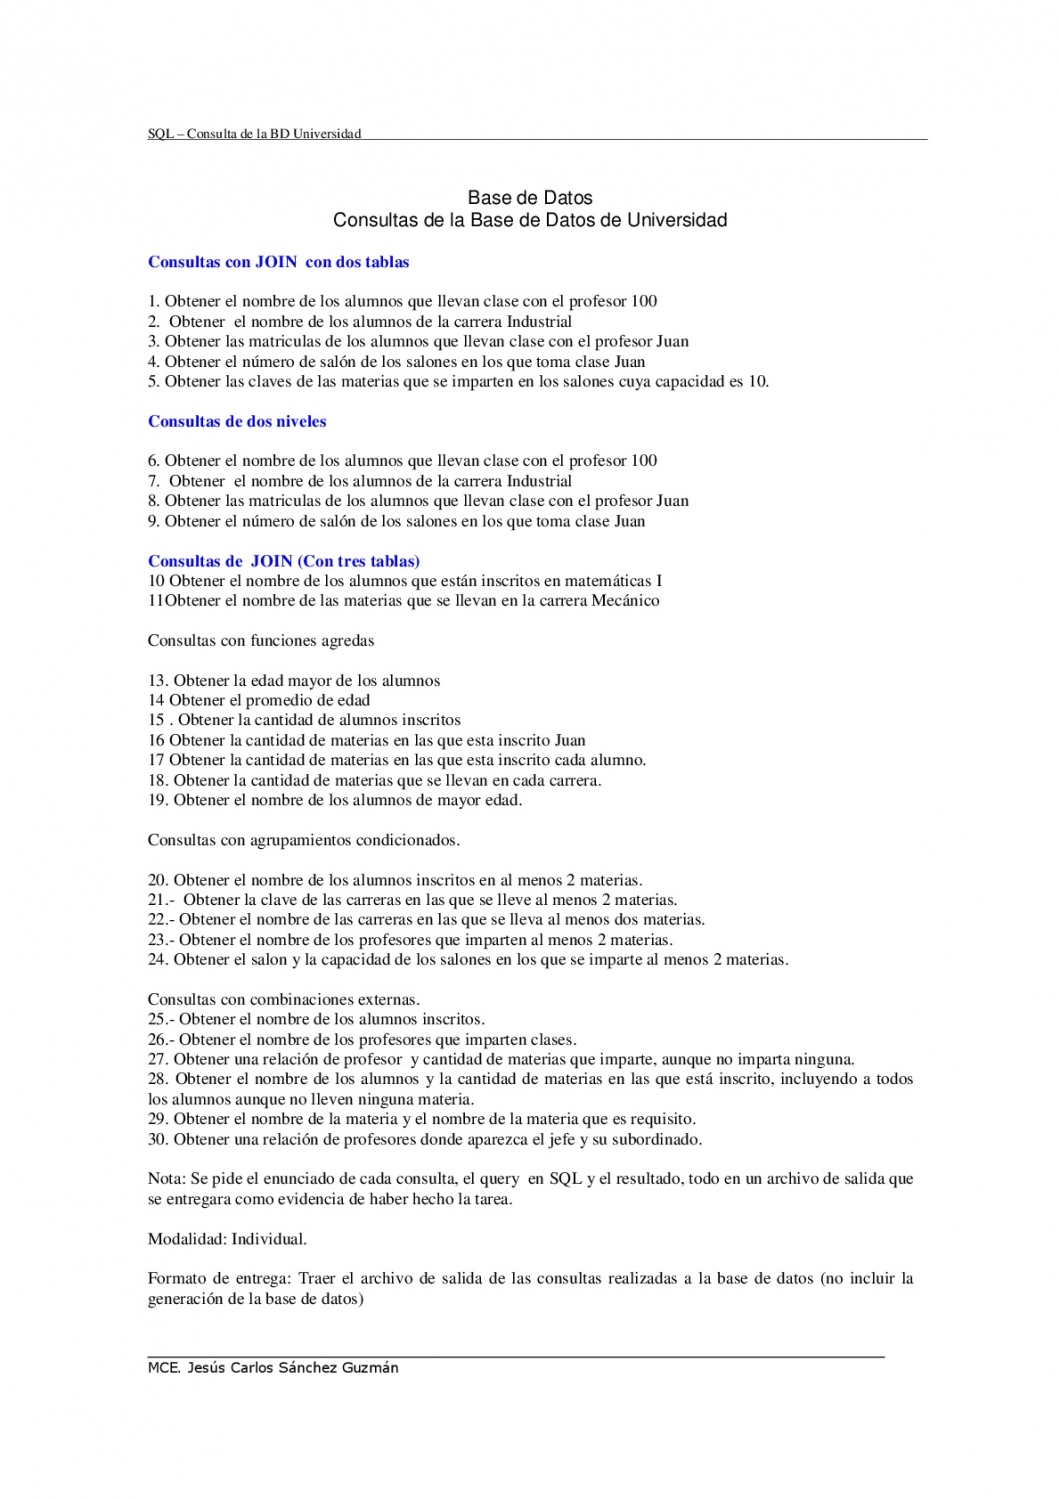 04-Consultas-SQL-de-Universidad-001